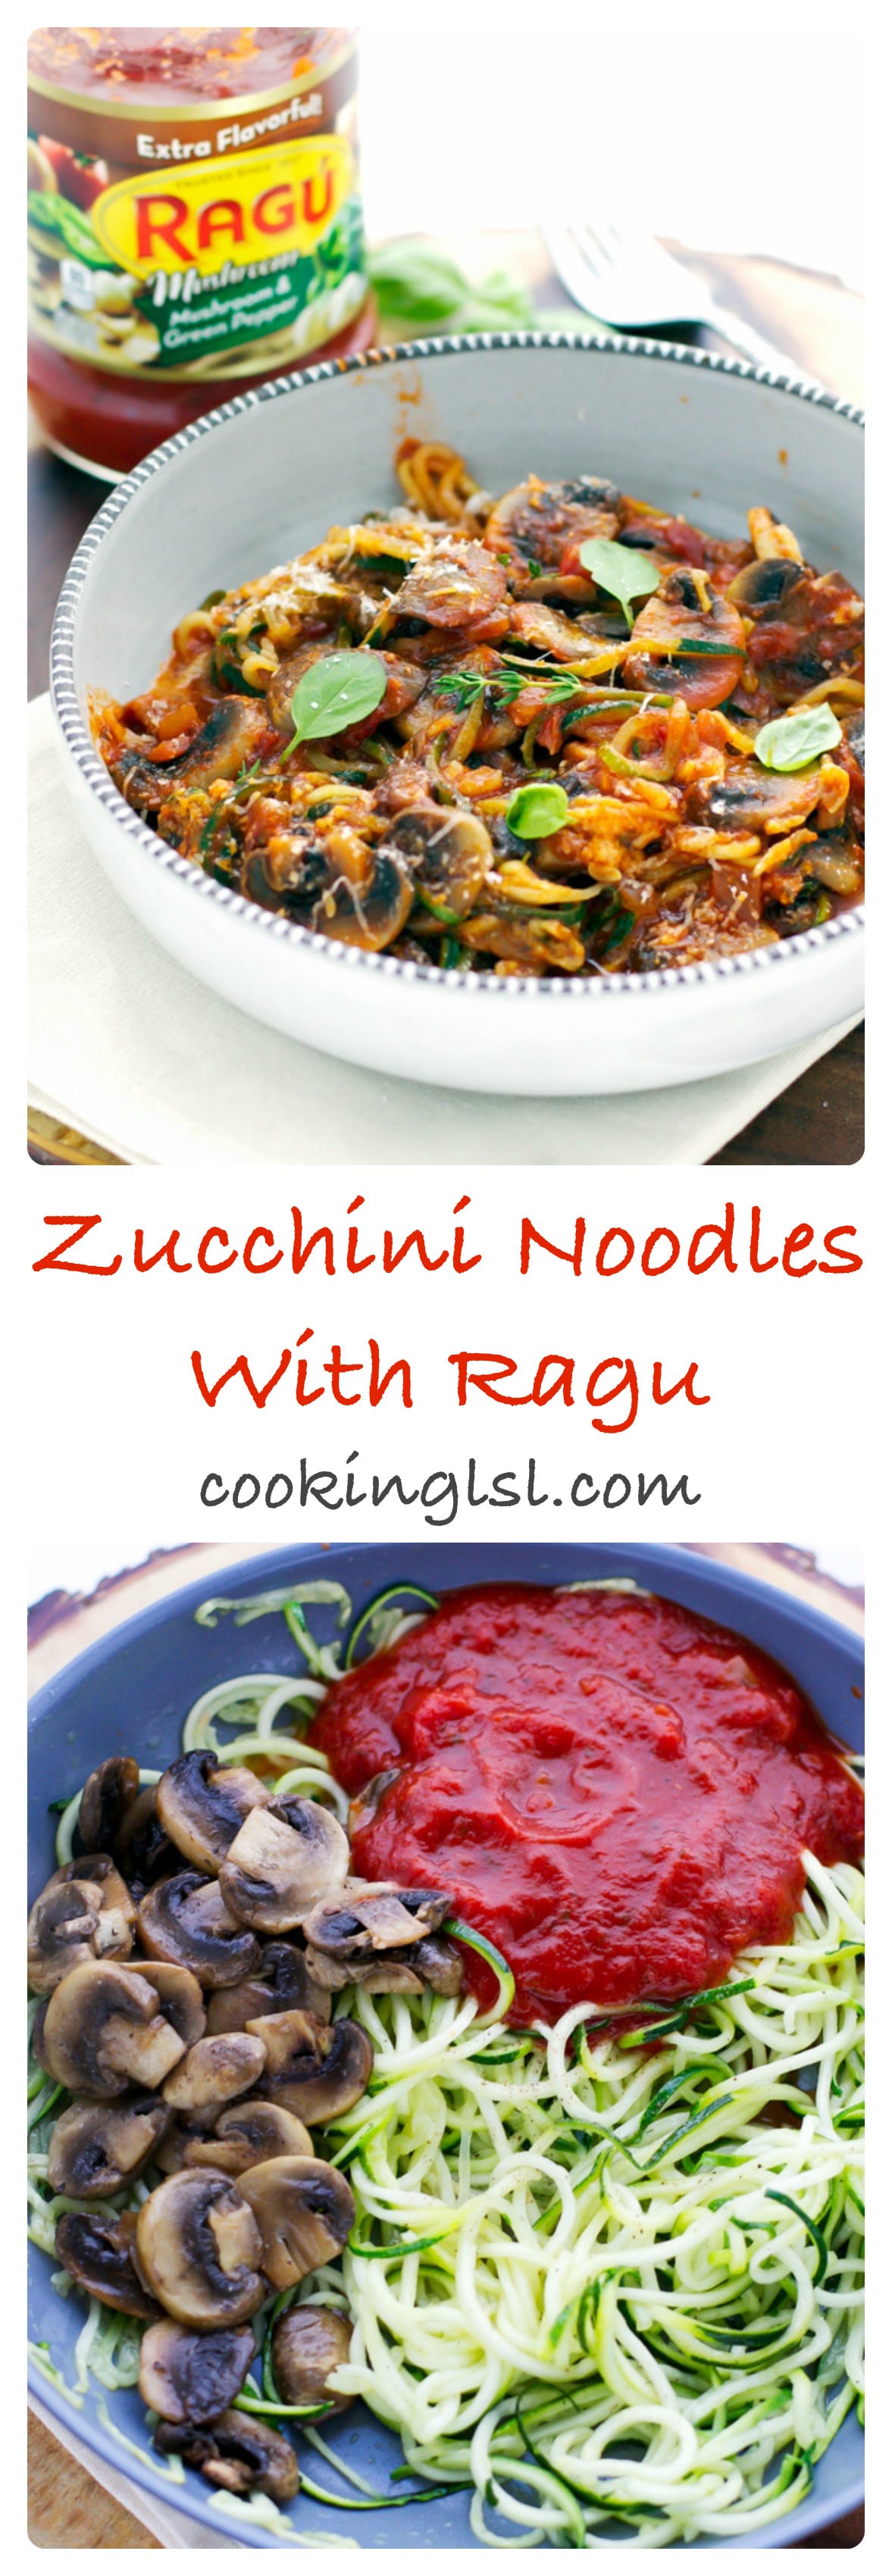 ragu-zucchini-noodles